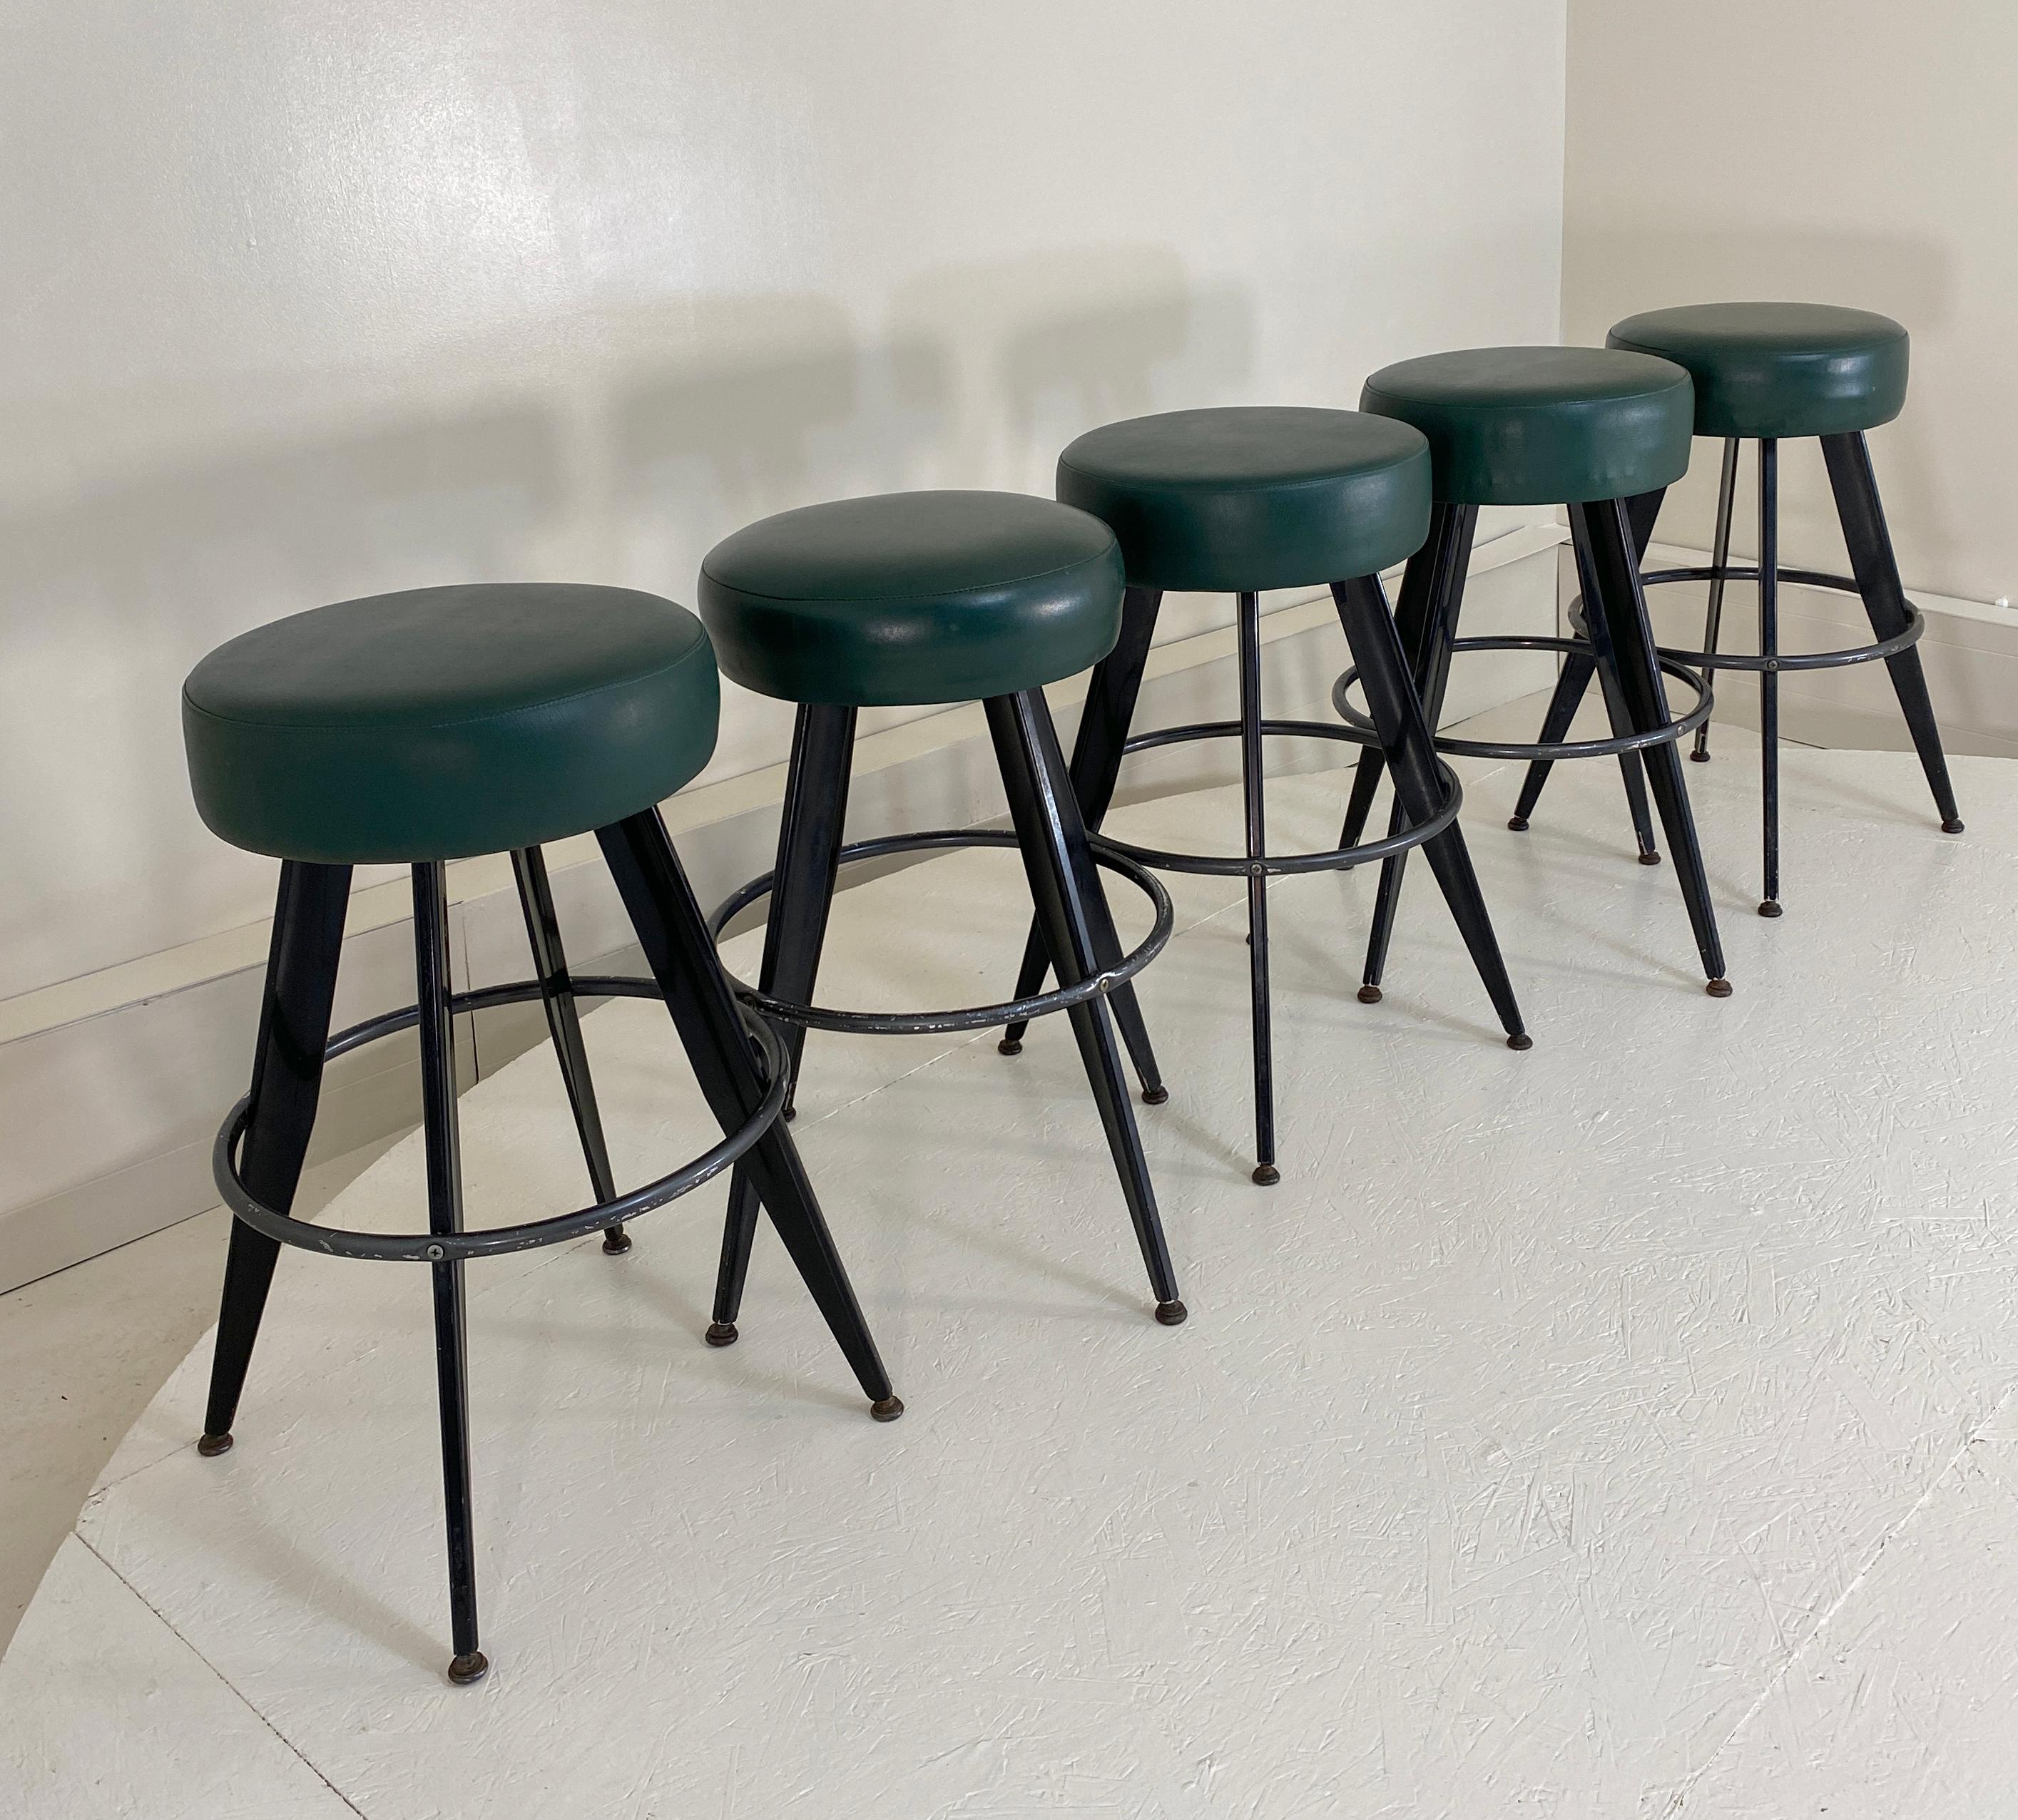 5 circular backless bar stools. 29.5